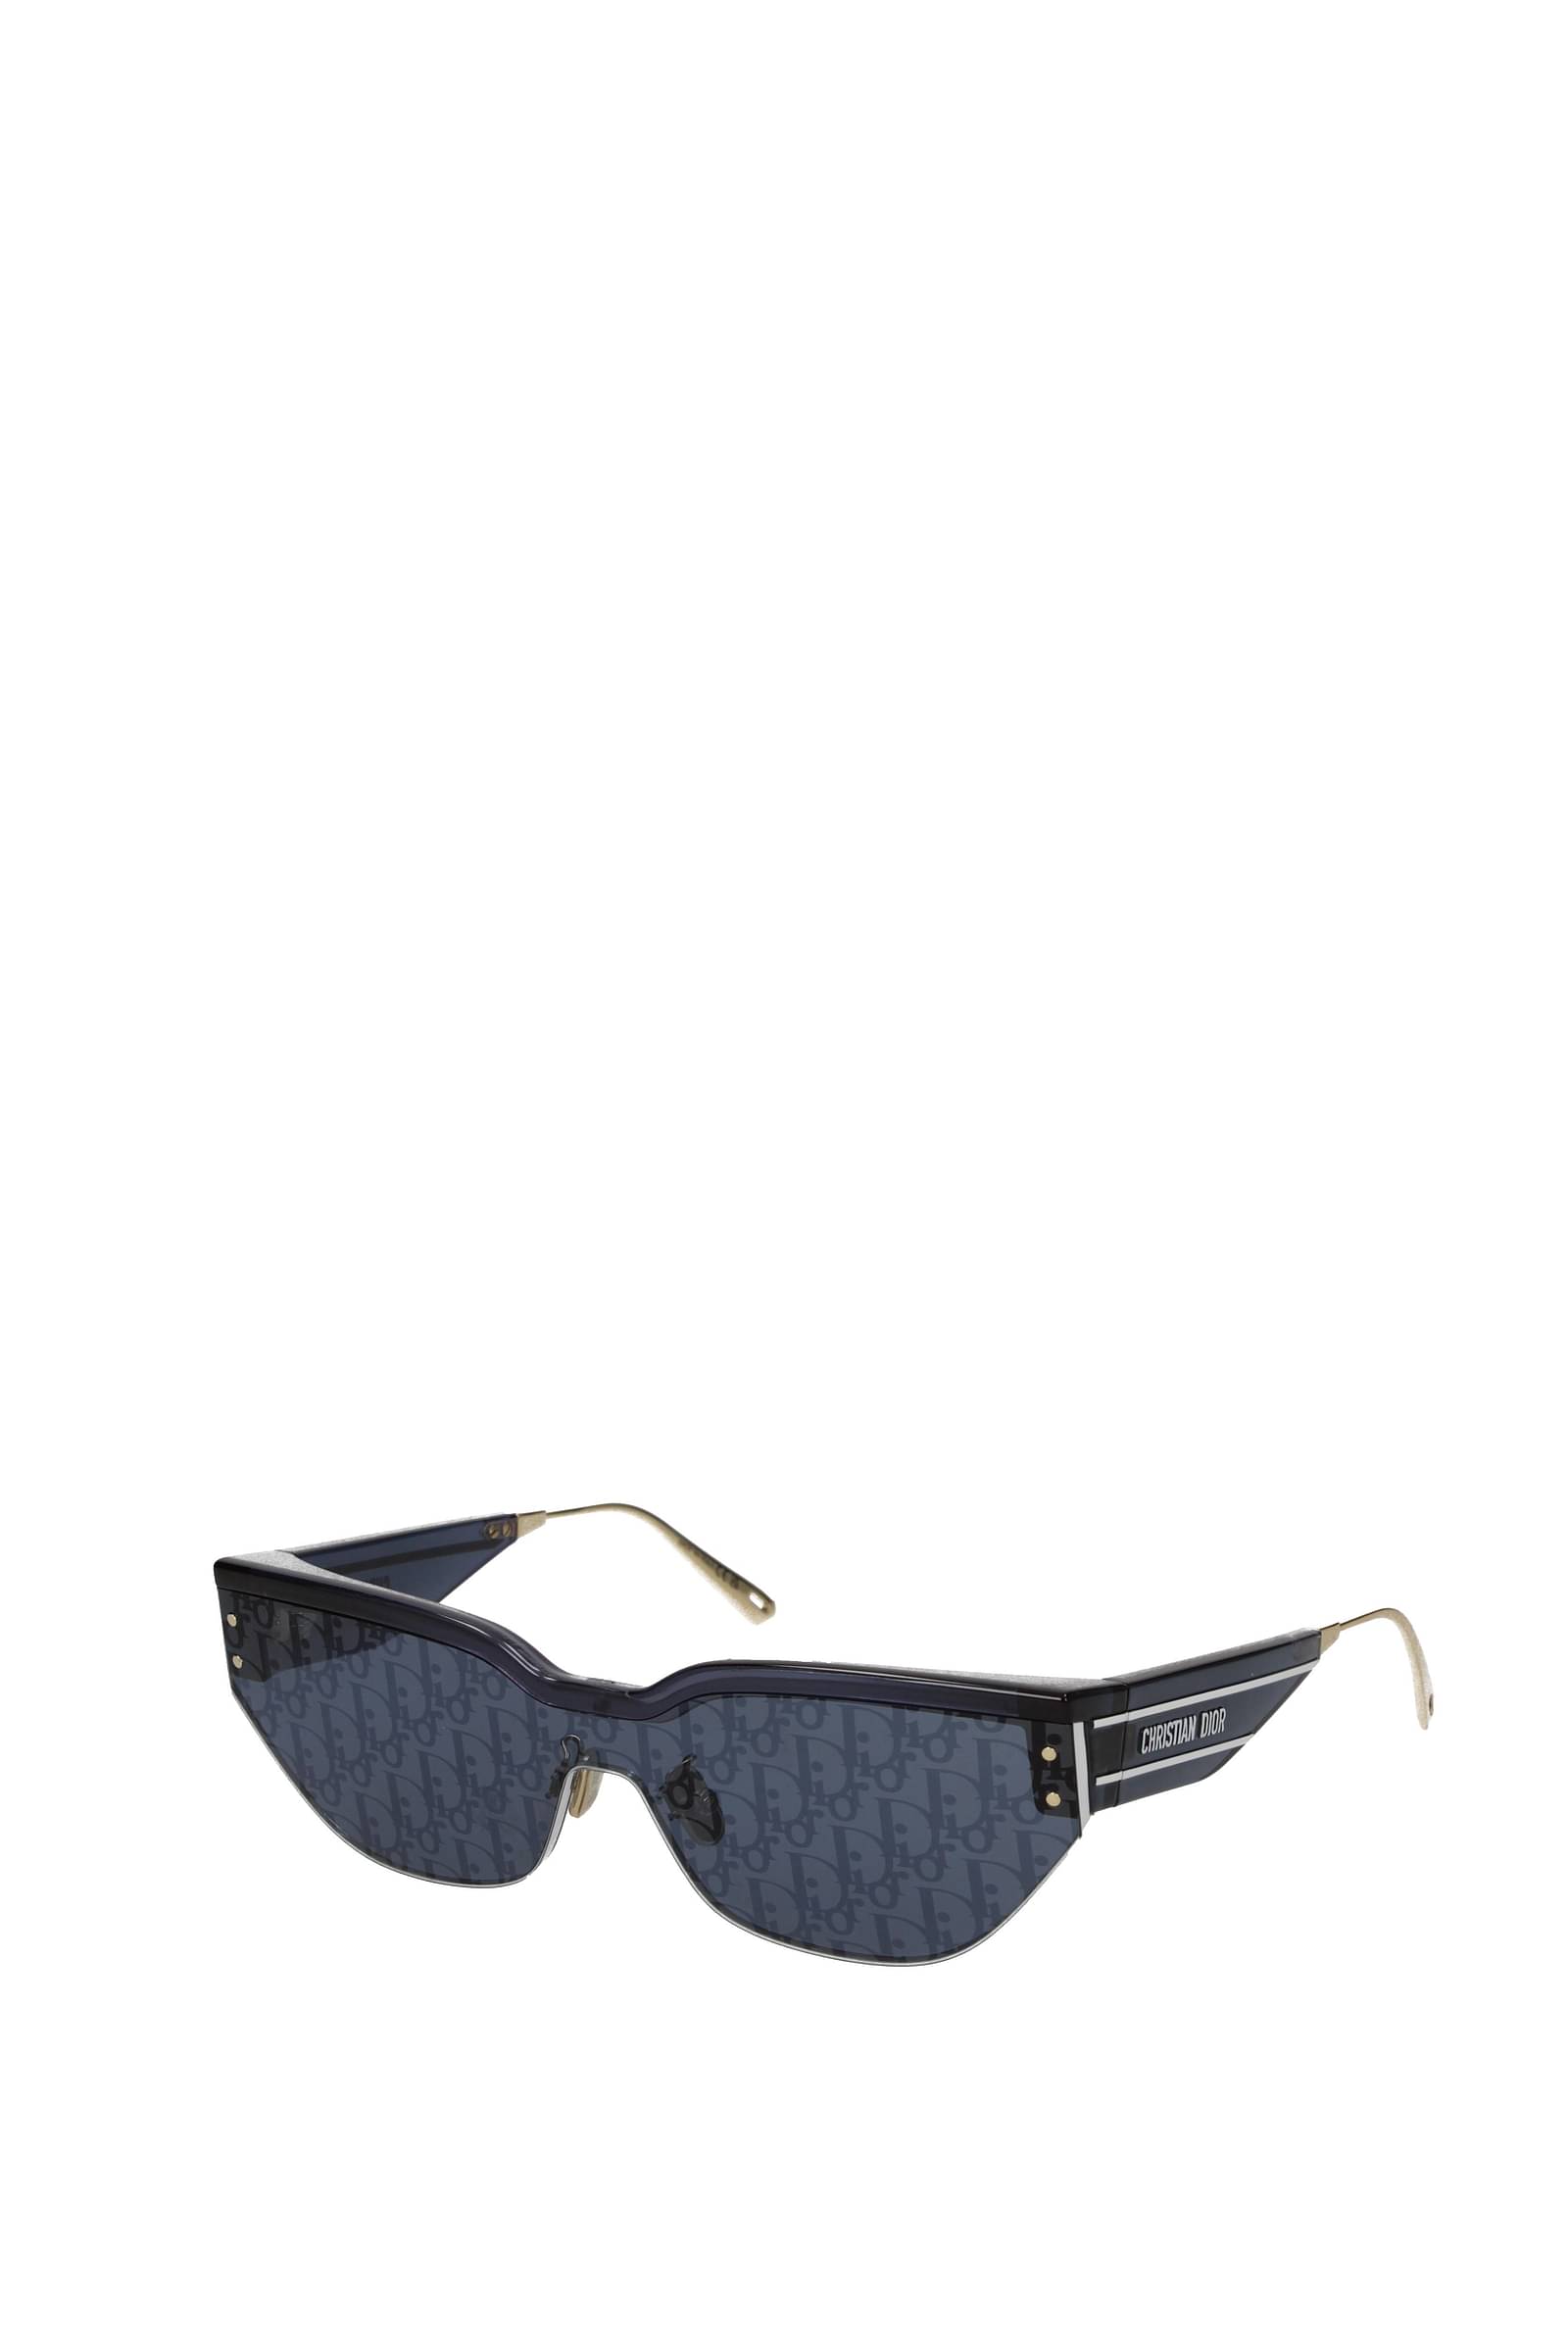 Christian Dior Sunglasses  WithMySunglasses